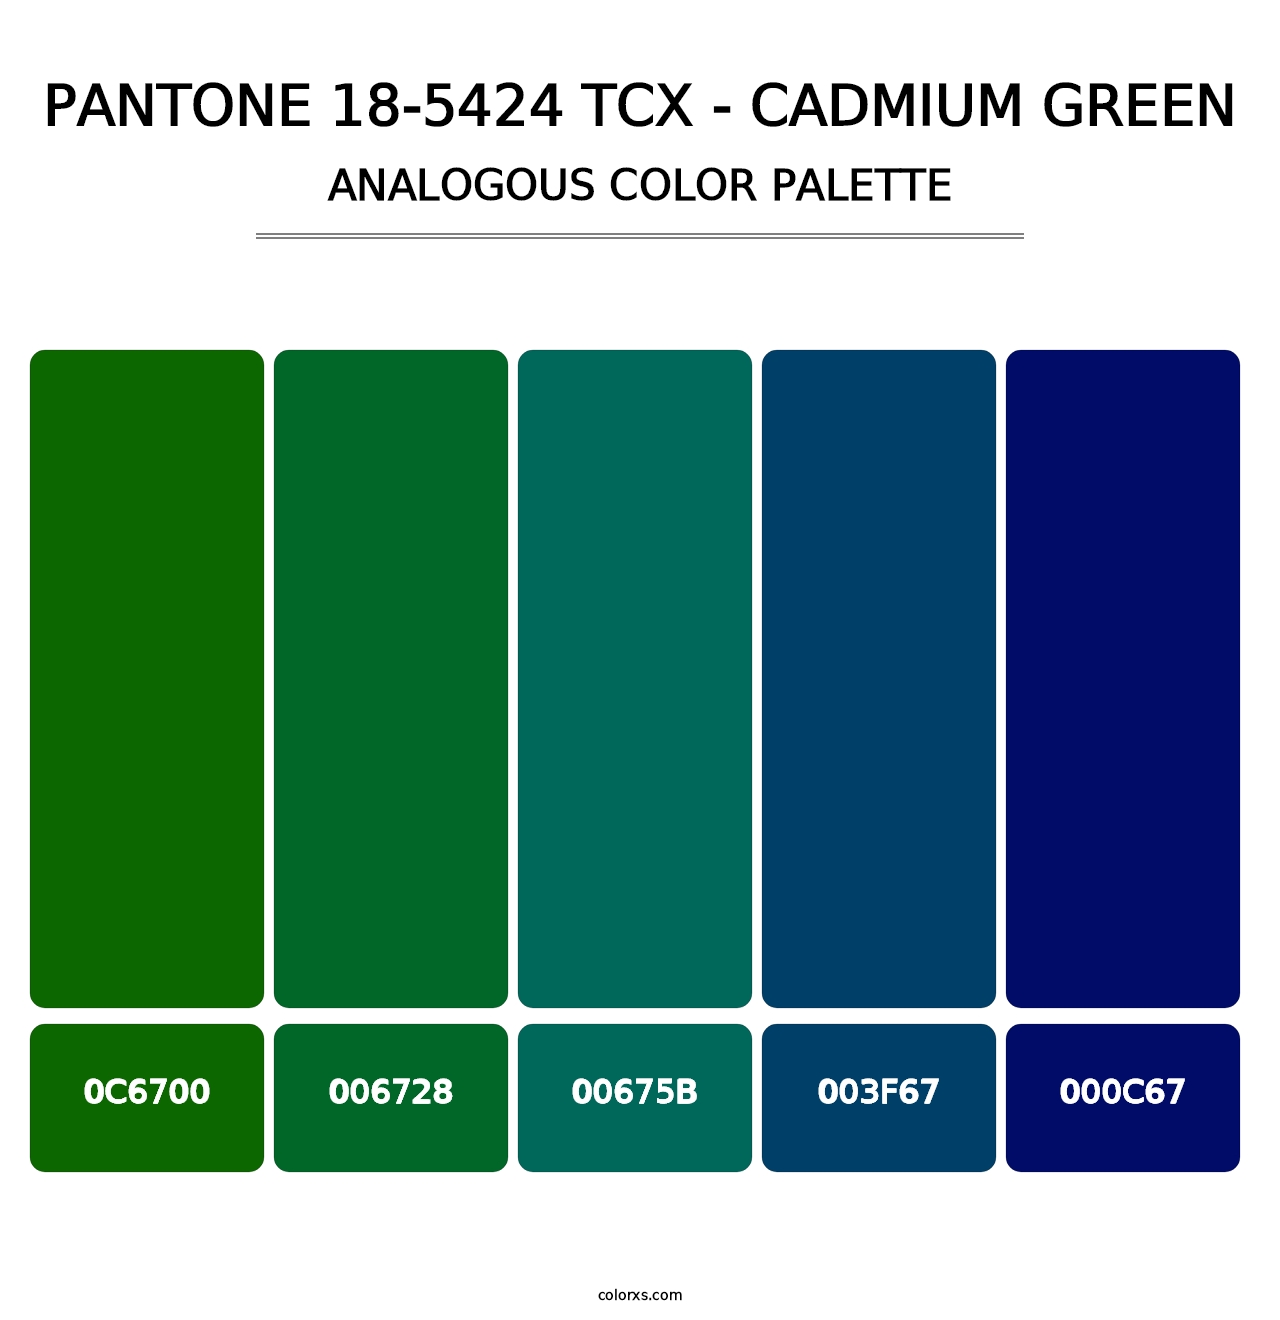 PANTONE 18-5424 TCX - Cadmium Green - Analogous Color Palette